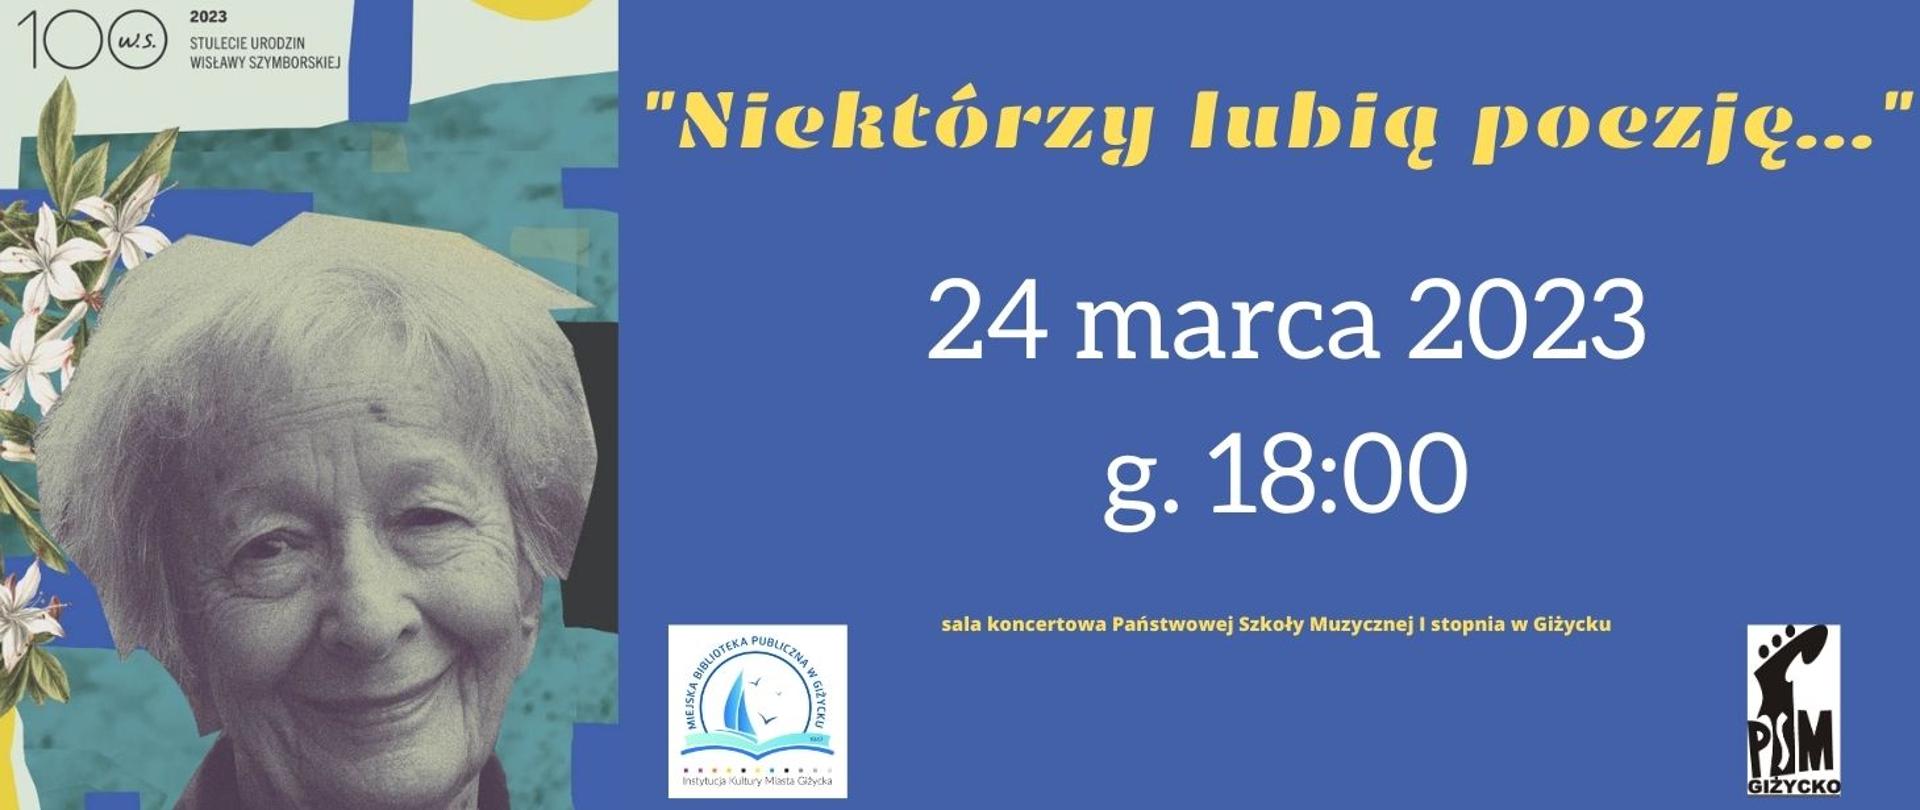 panorama informująca o spotkaniu literackim z okazji 100 lecia urodzin Wisławy Szymborskiej, które odbędzie się 24.03.2023 o godz. 18:00. Zdjęcie utrzymane w kolorystyce niebieskiej, z lewej strony duże zdjęcie poetki.